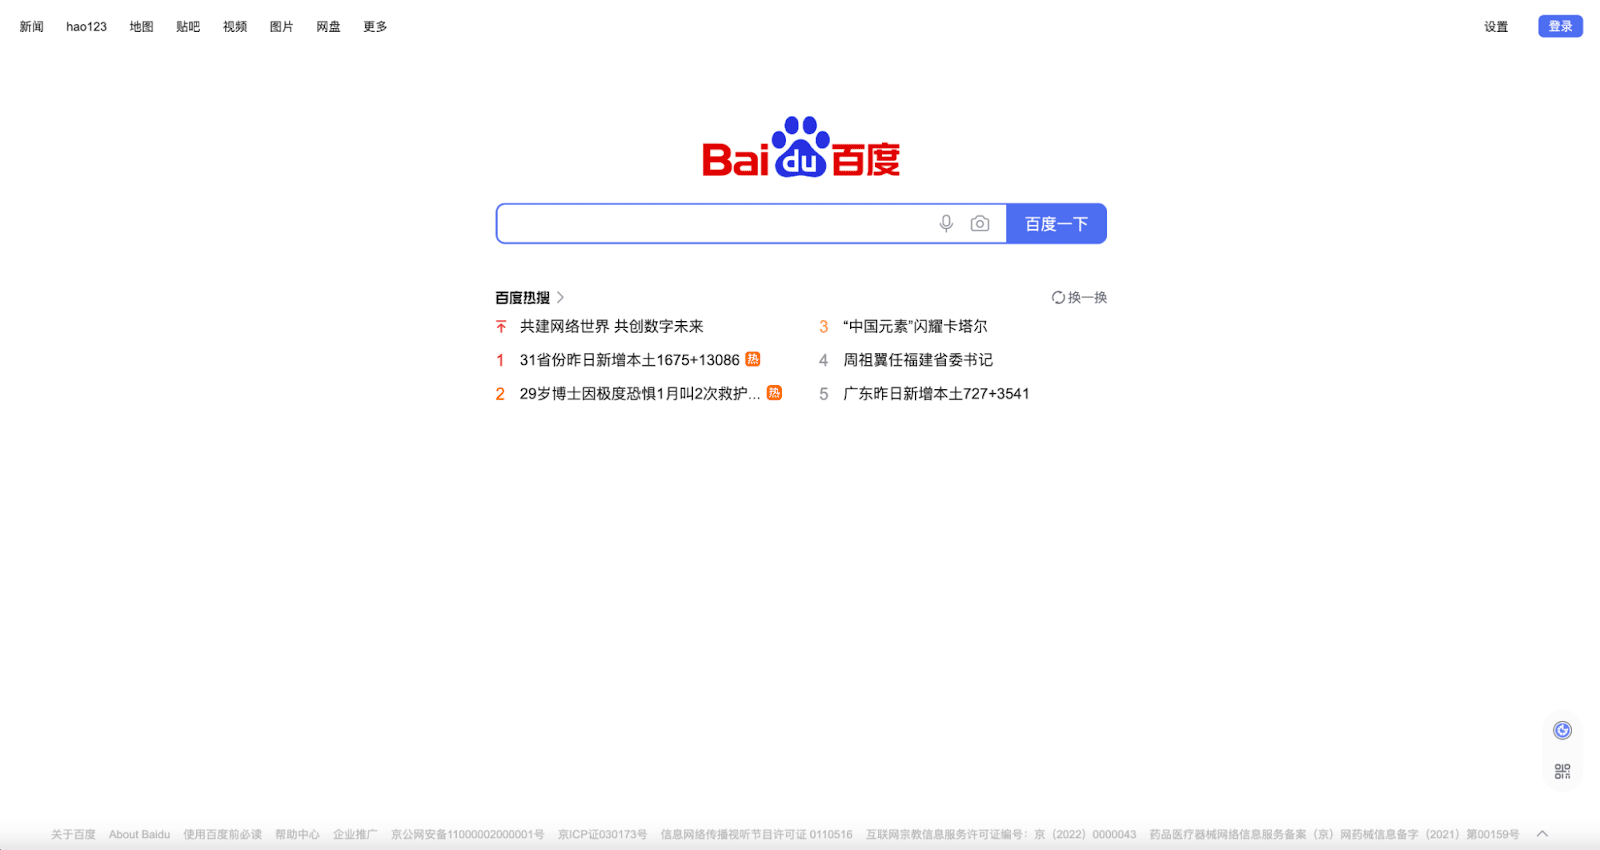 Baidu Spider ist der Crawler für Baidu, eine chinesische Suchmaschine